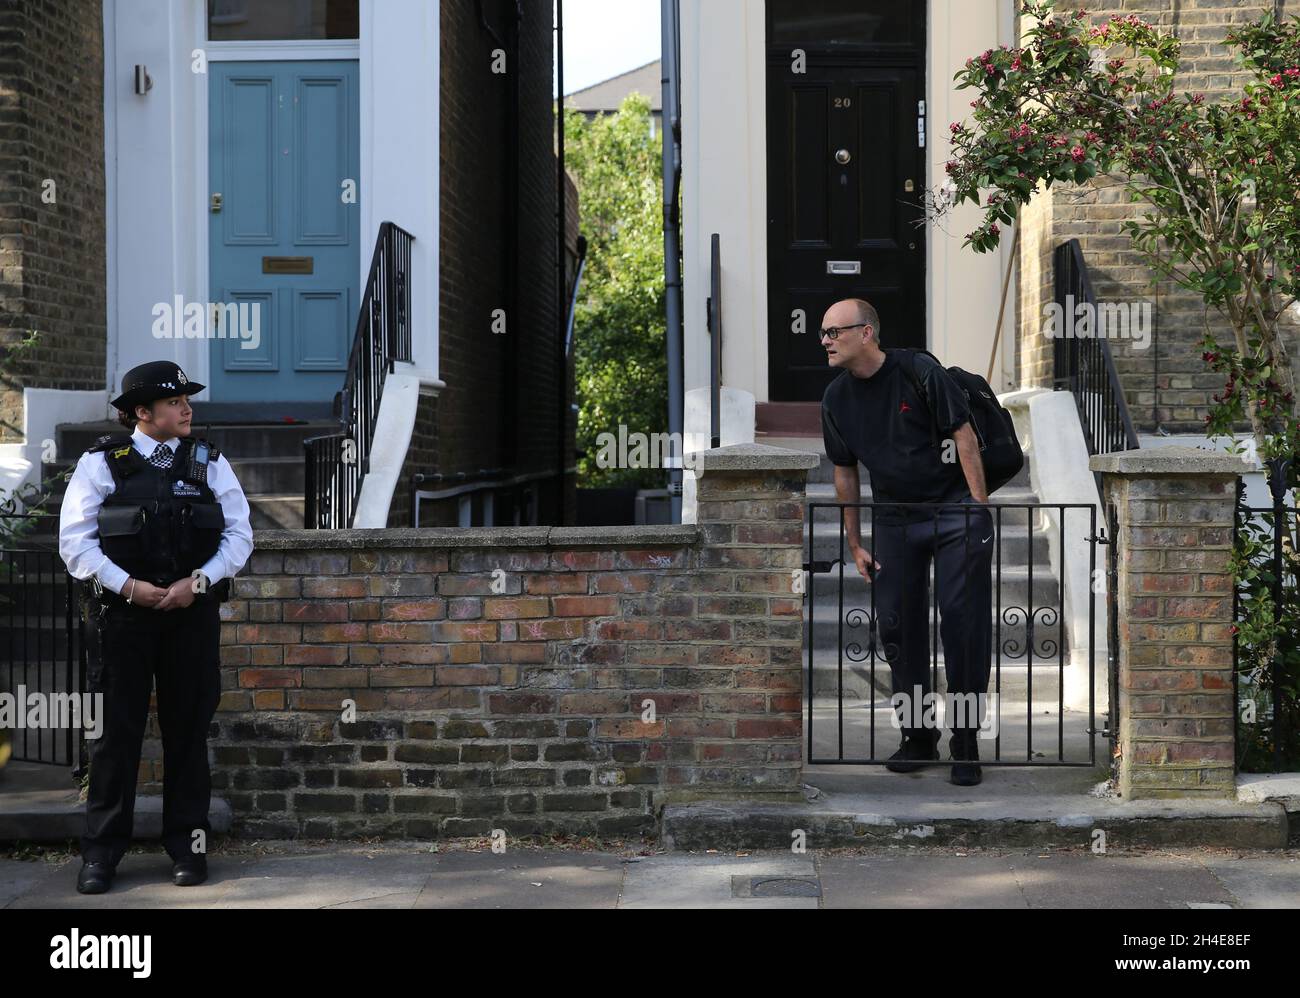 Dominic Cummings, der oberste Berater von Premierminister Boris Johnson, verlässt sein Haus im Norden Londons, während der Streit über seine Reise nach Durham während der Sperre weitergeht. Bilddatum: Donnerstag, 28. Mai 2020. Stockfoto